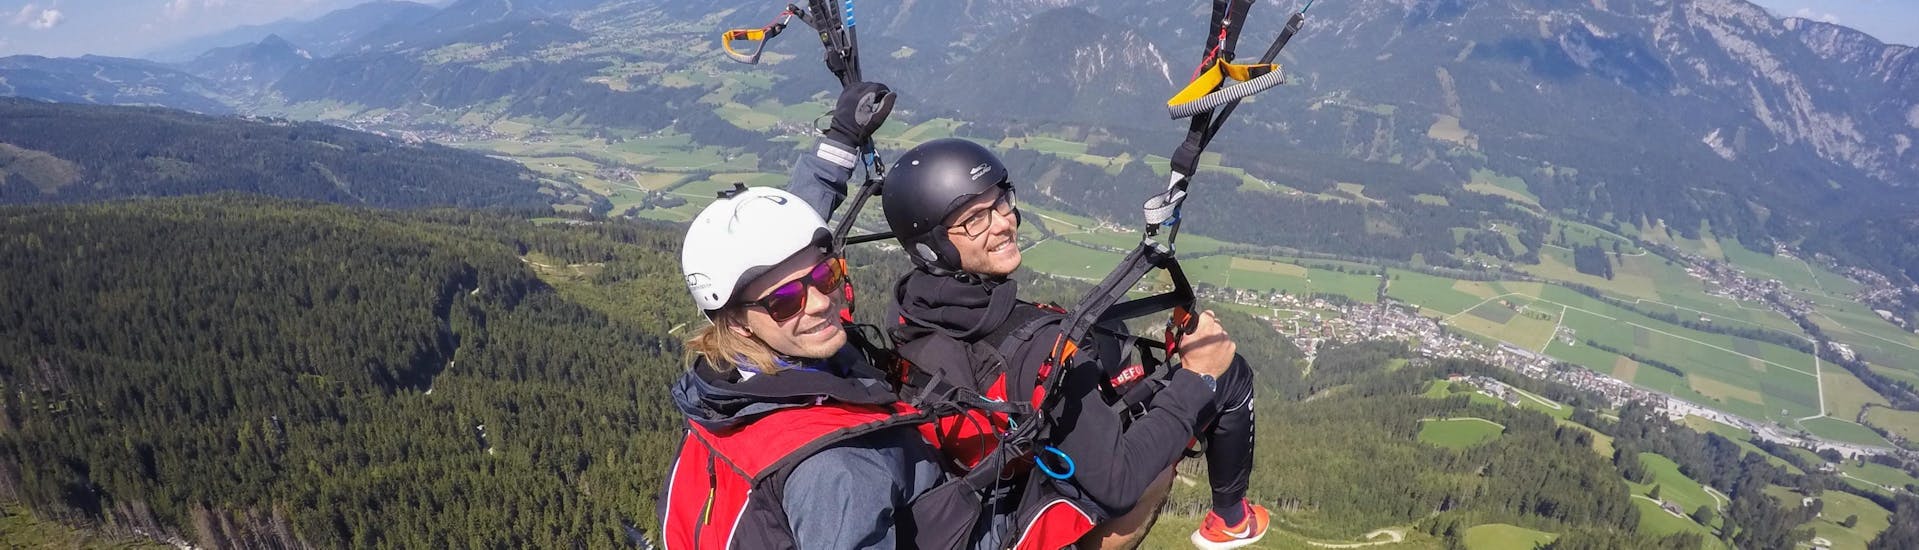 Ein Kunde und sein Pilot der Flugschule Sky Club Austria Gröbming genießen das Tandem Paragliding vom Hauser Kaibling.